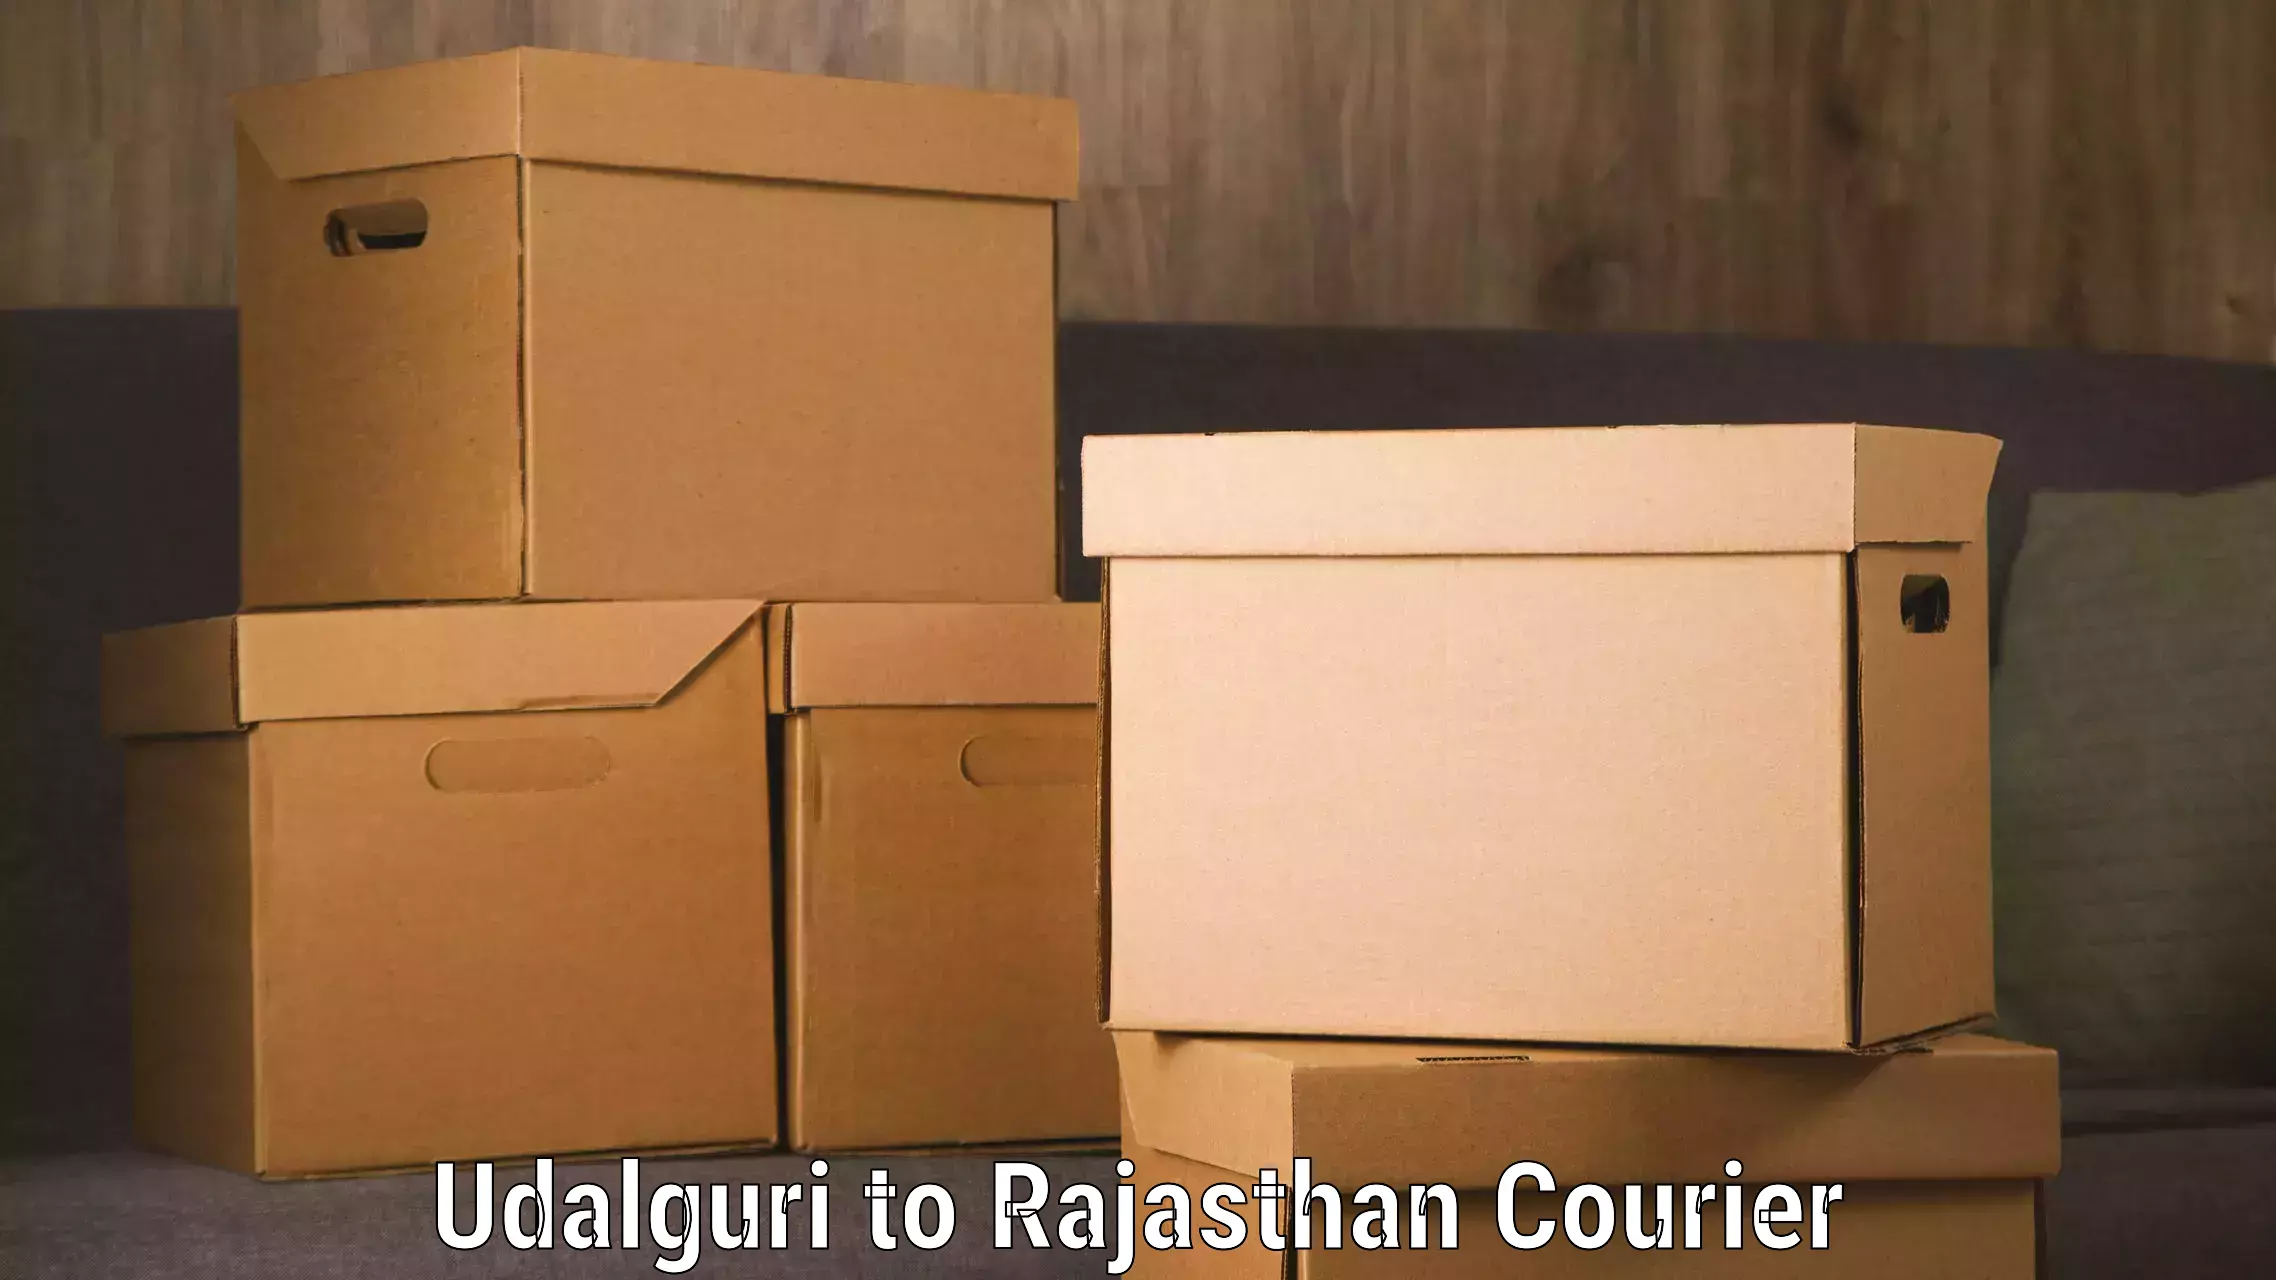 Luggage delivery network Udalguri to IIT Jodhpur